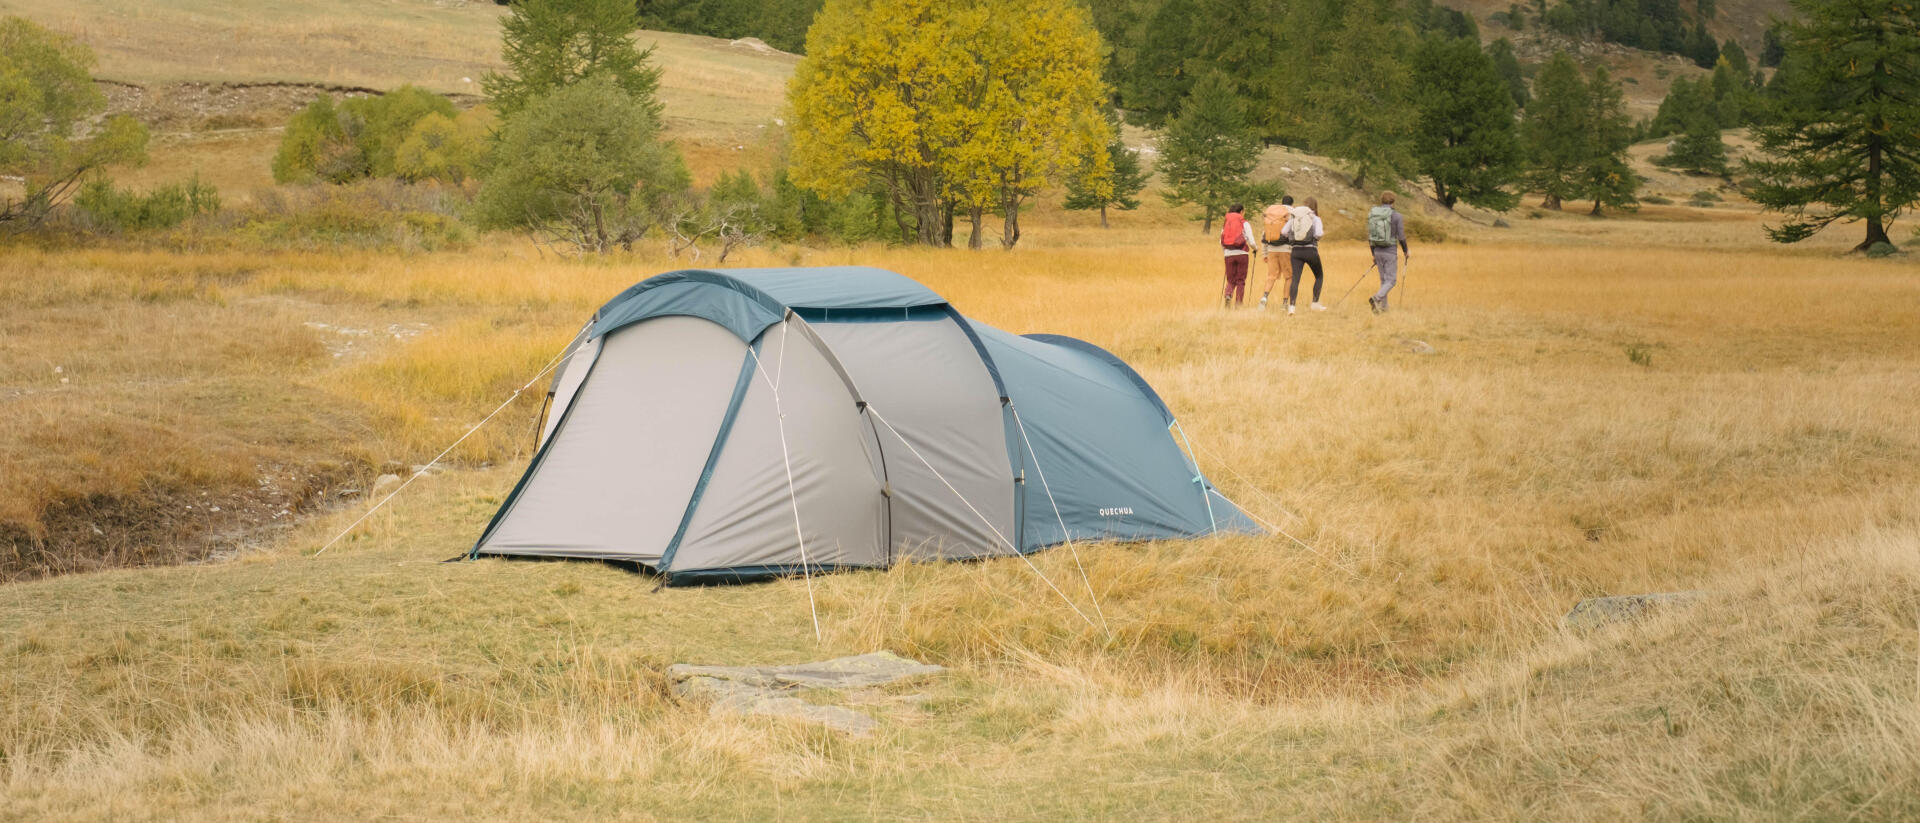 tenda de campismo familiar uma planície 